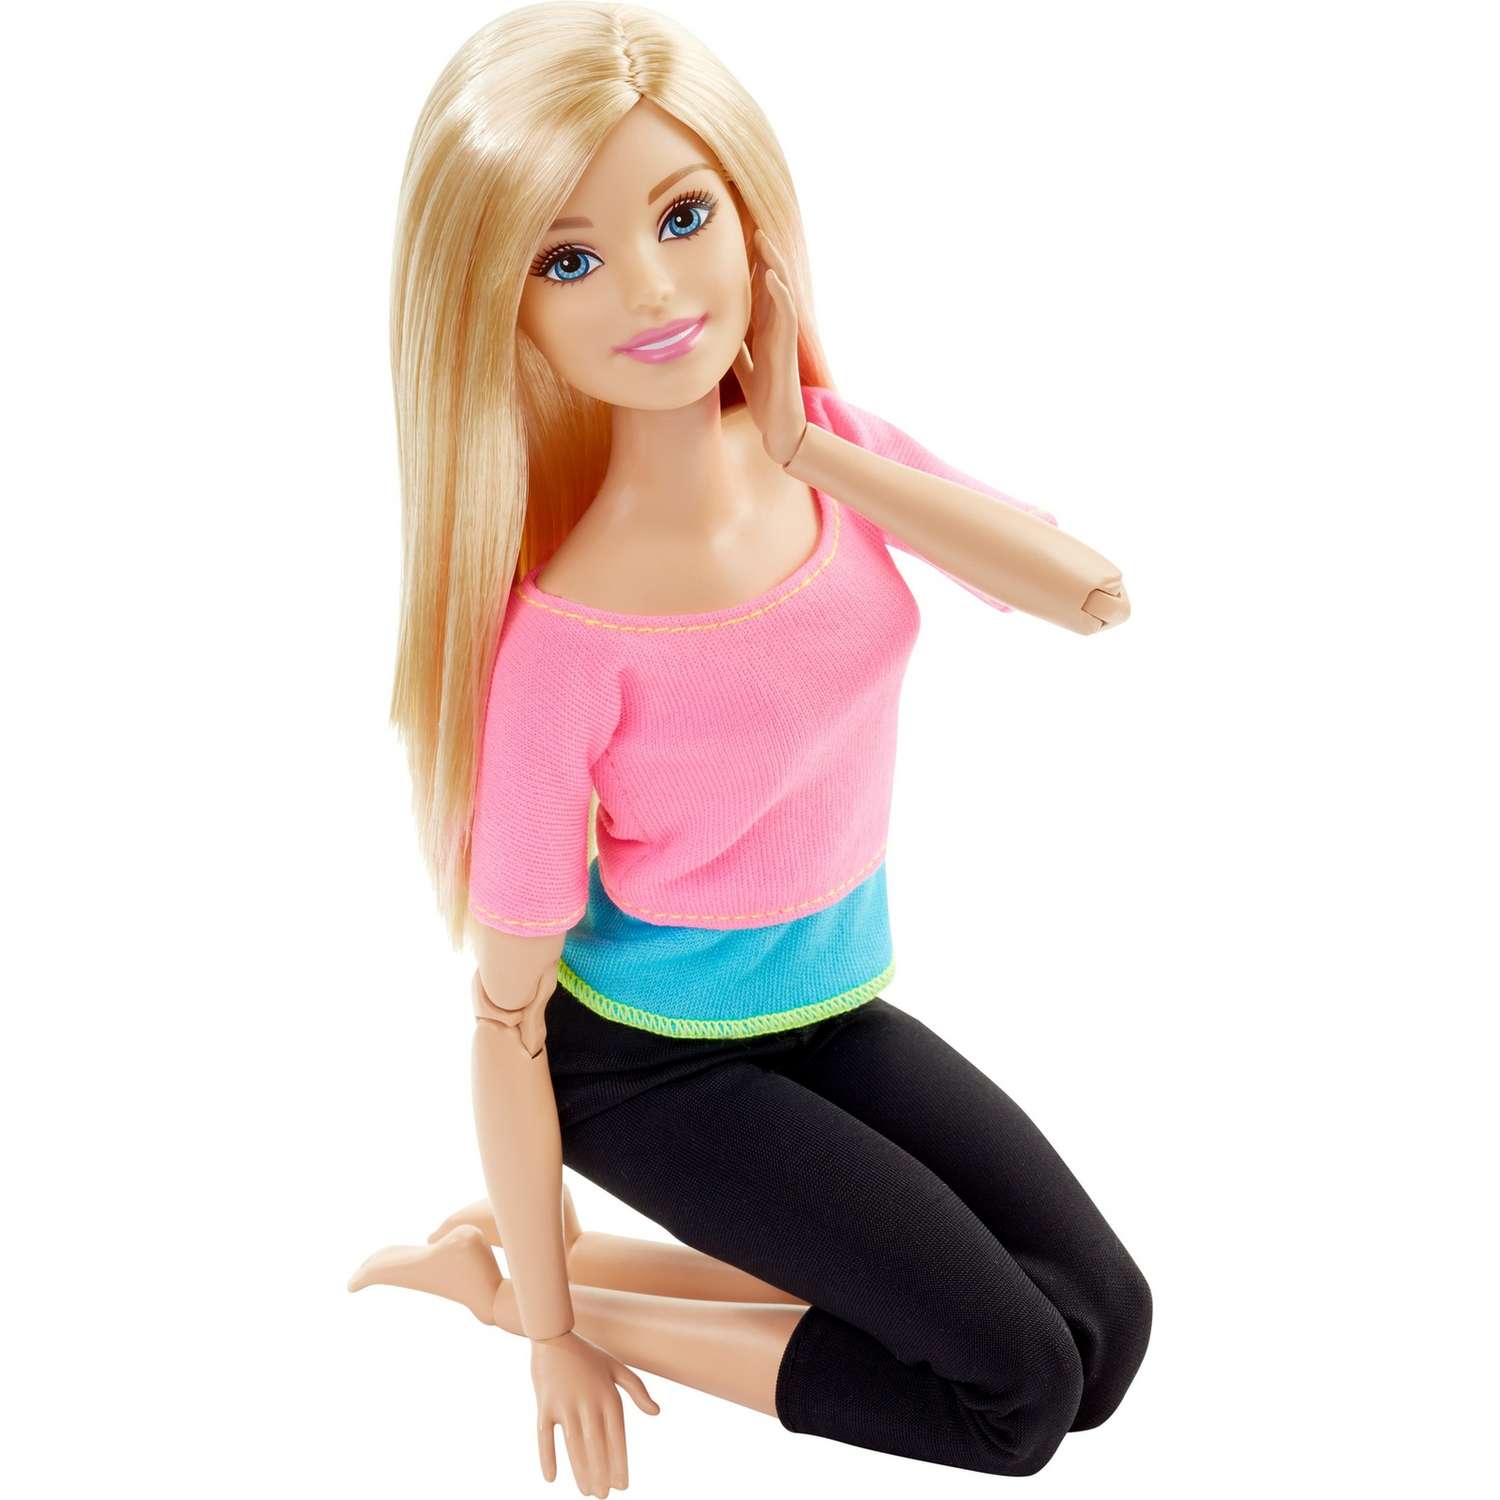 Кукла Barbie Безграничные движения Блондинка с артикуляцией тела DHL82 DHL82 - фото 1